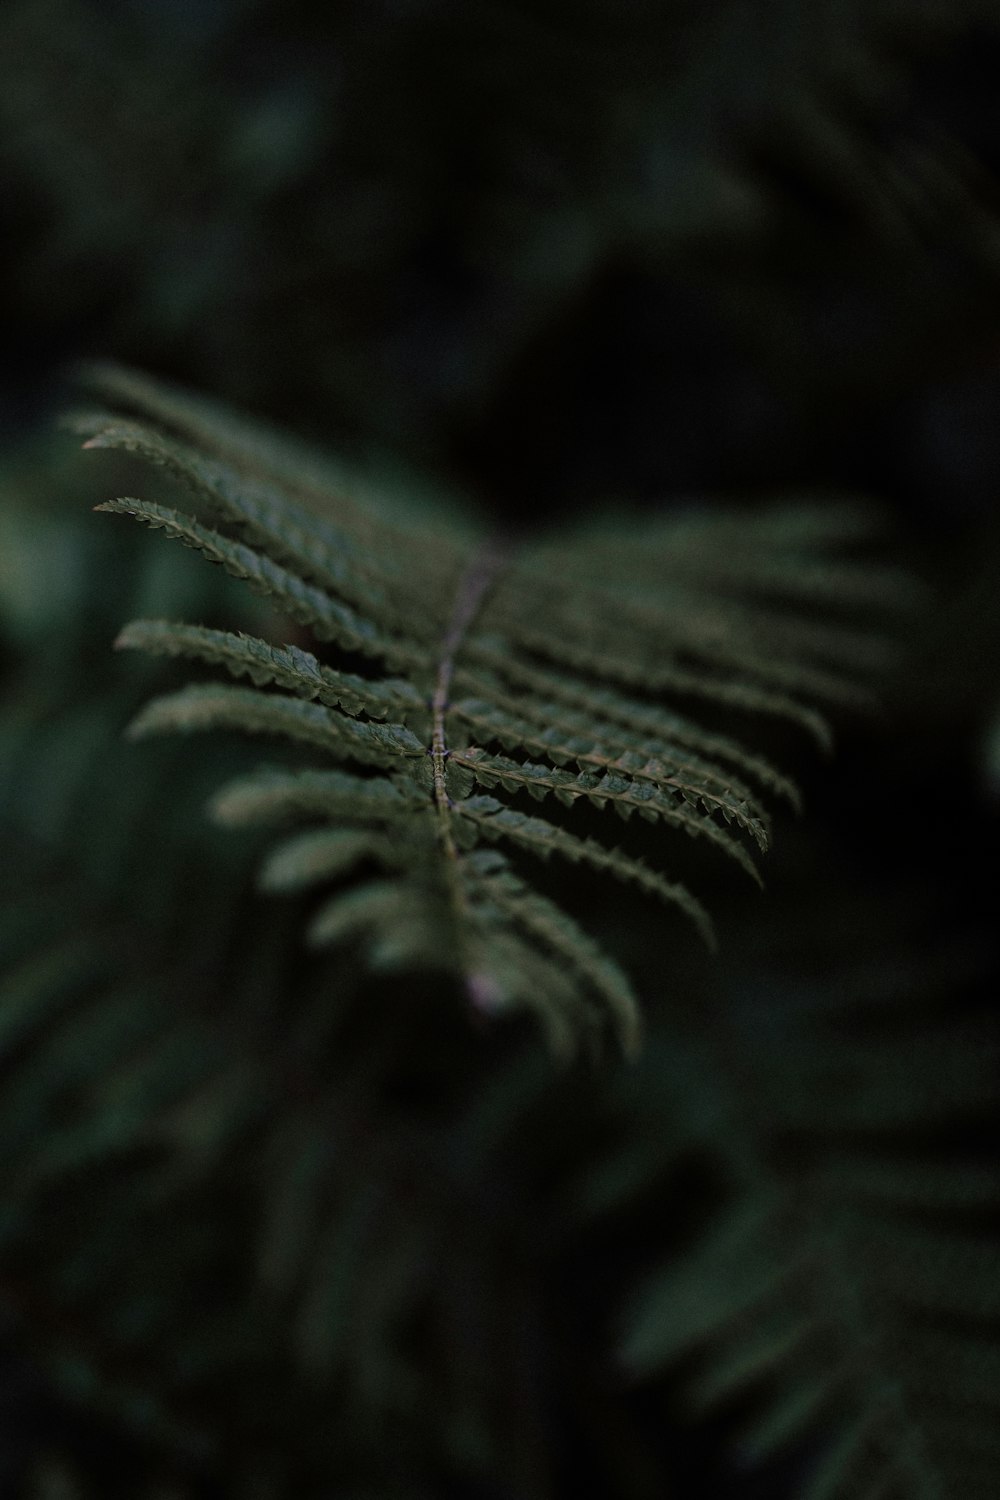 a close up of a fern leaf on a dark background